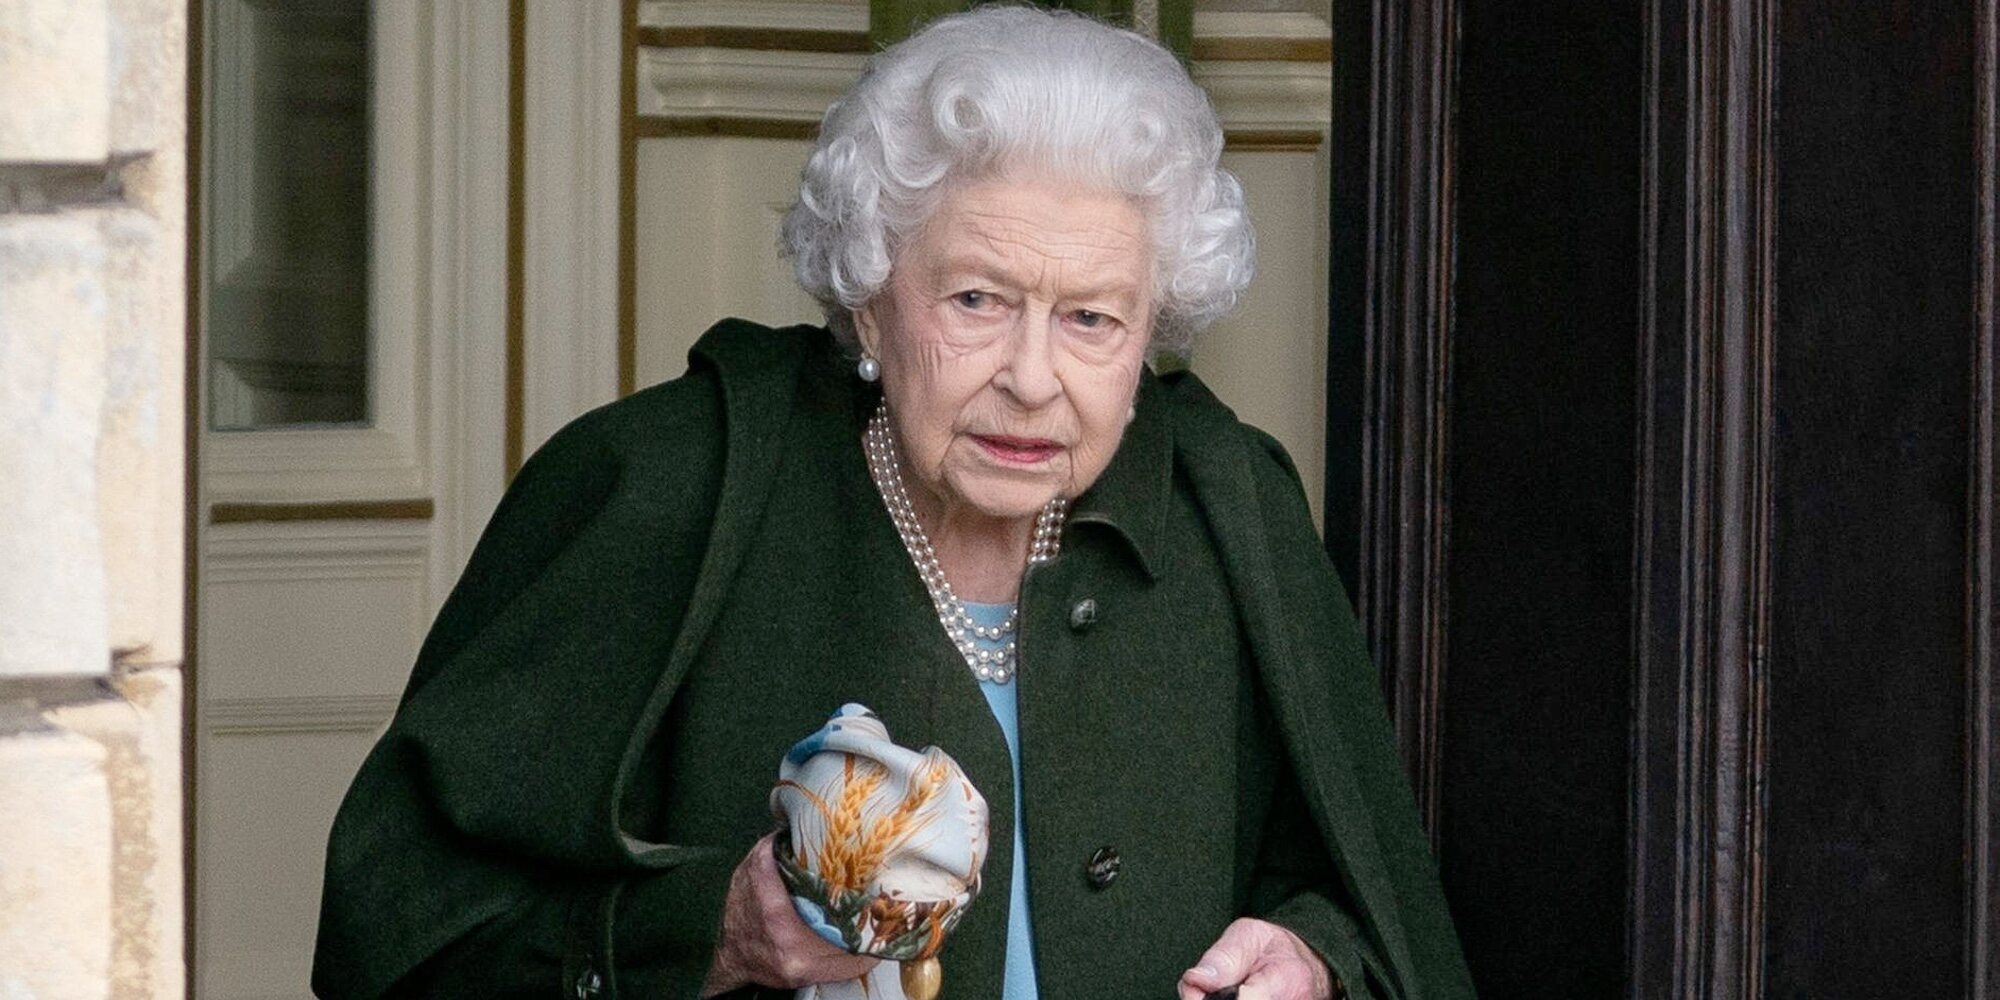 La Reina Isabel cancela sus compromisos telemáticos por los síntomas de coronavirus que sufre